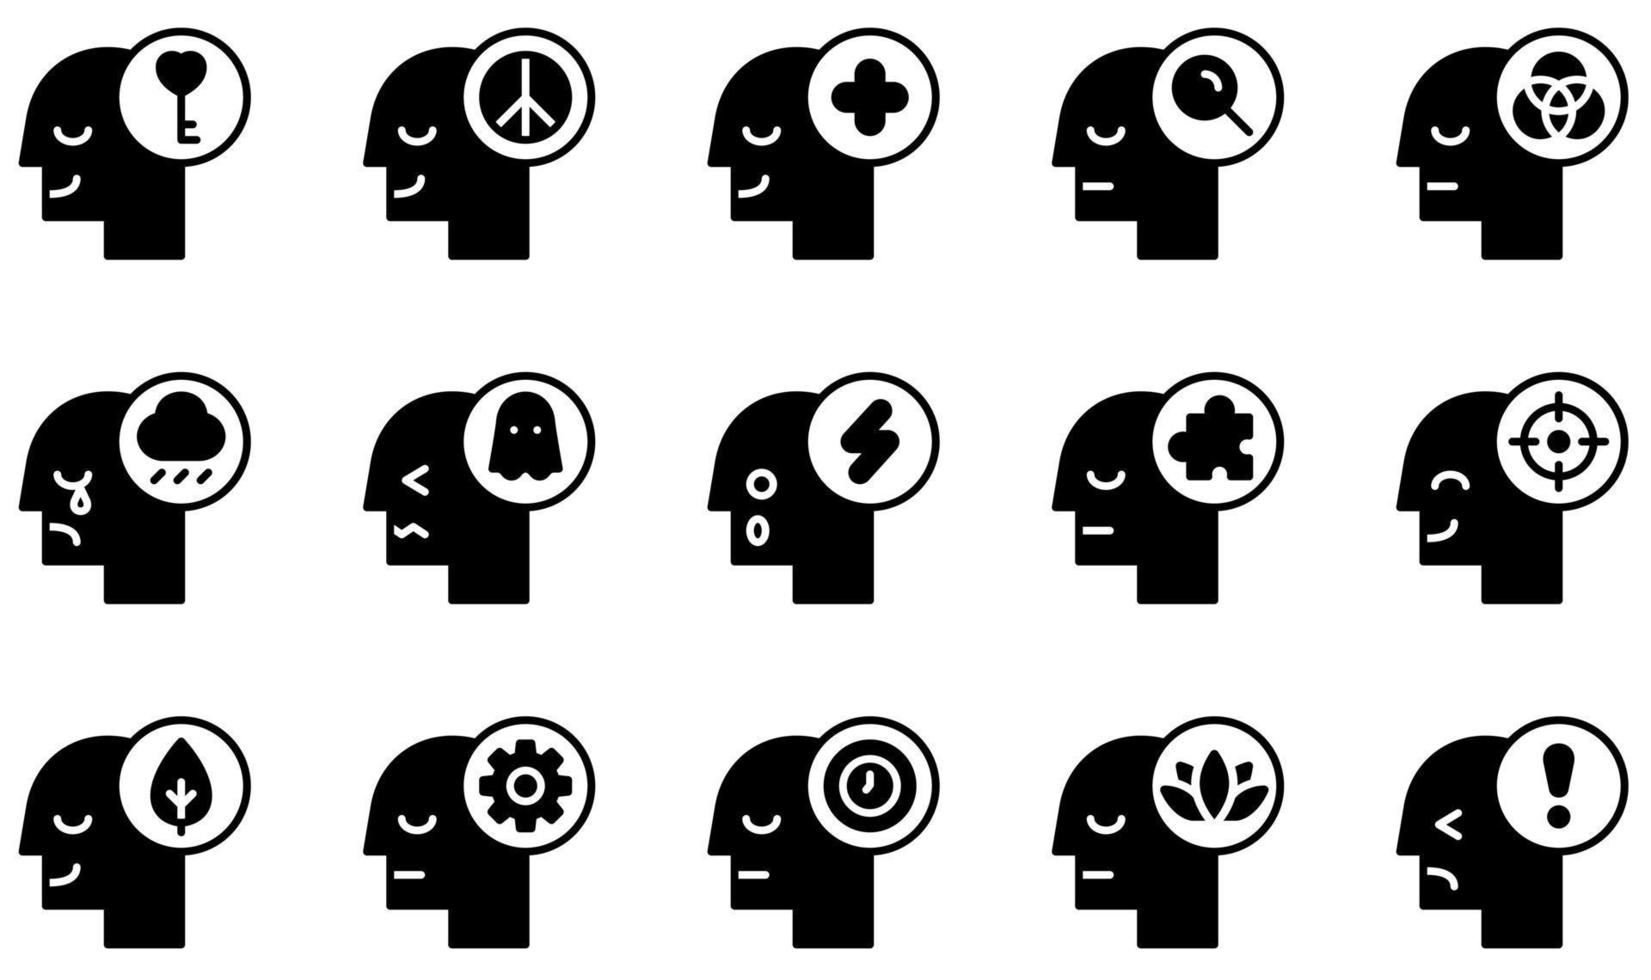 set di icone vettoriali relative alla mente umana. contiene icone come mente aperta, positivo, tristezza, paura, shock, tempo e altro ancora.